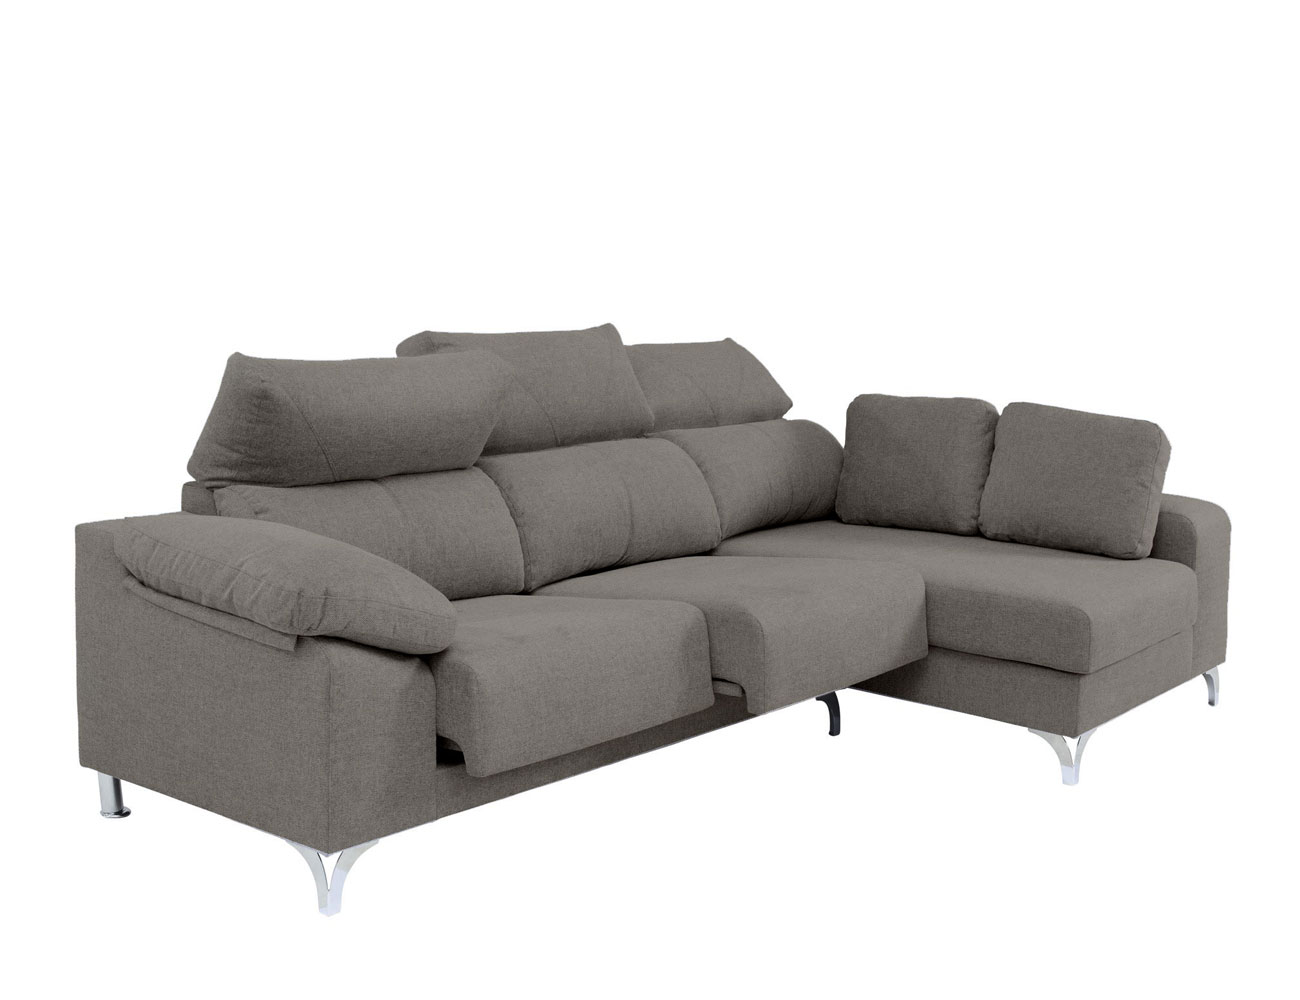 Sofa chaislongue cuba bela 5 detalle